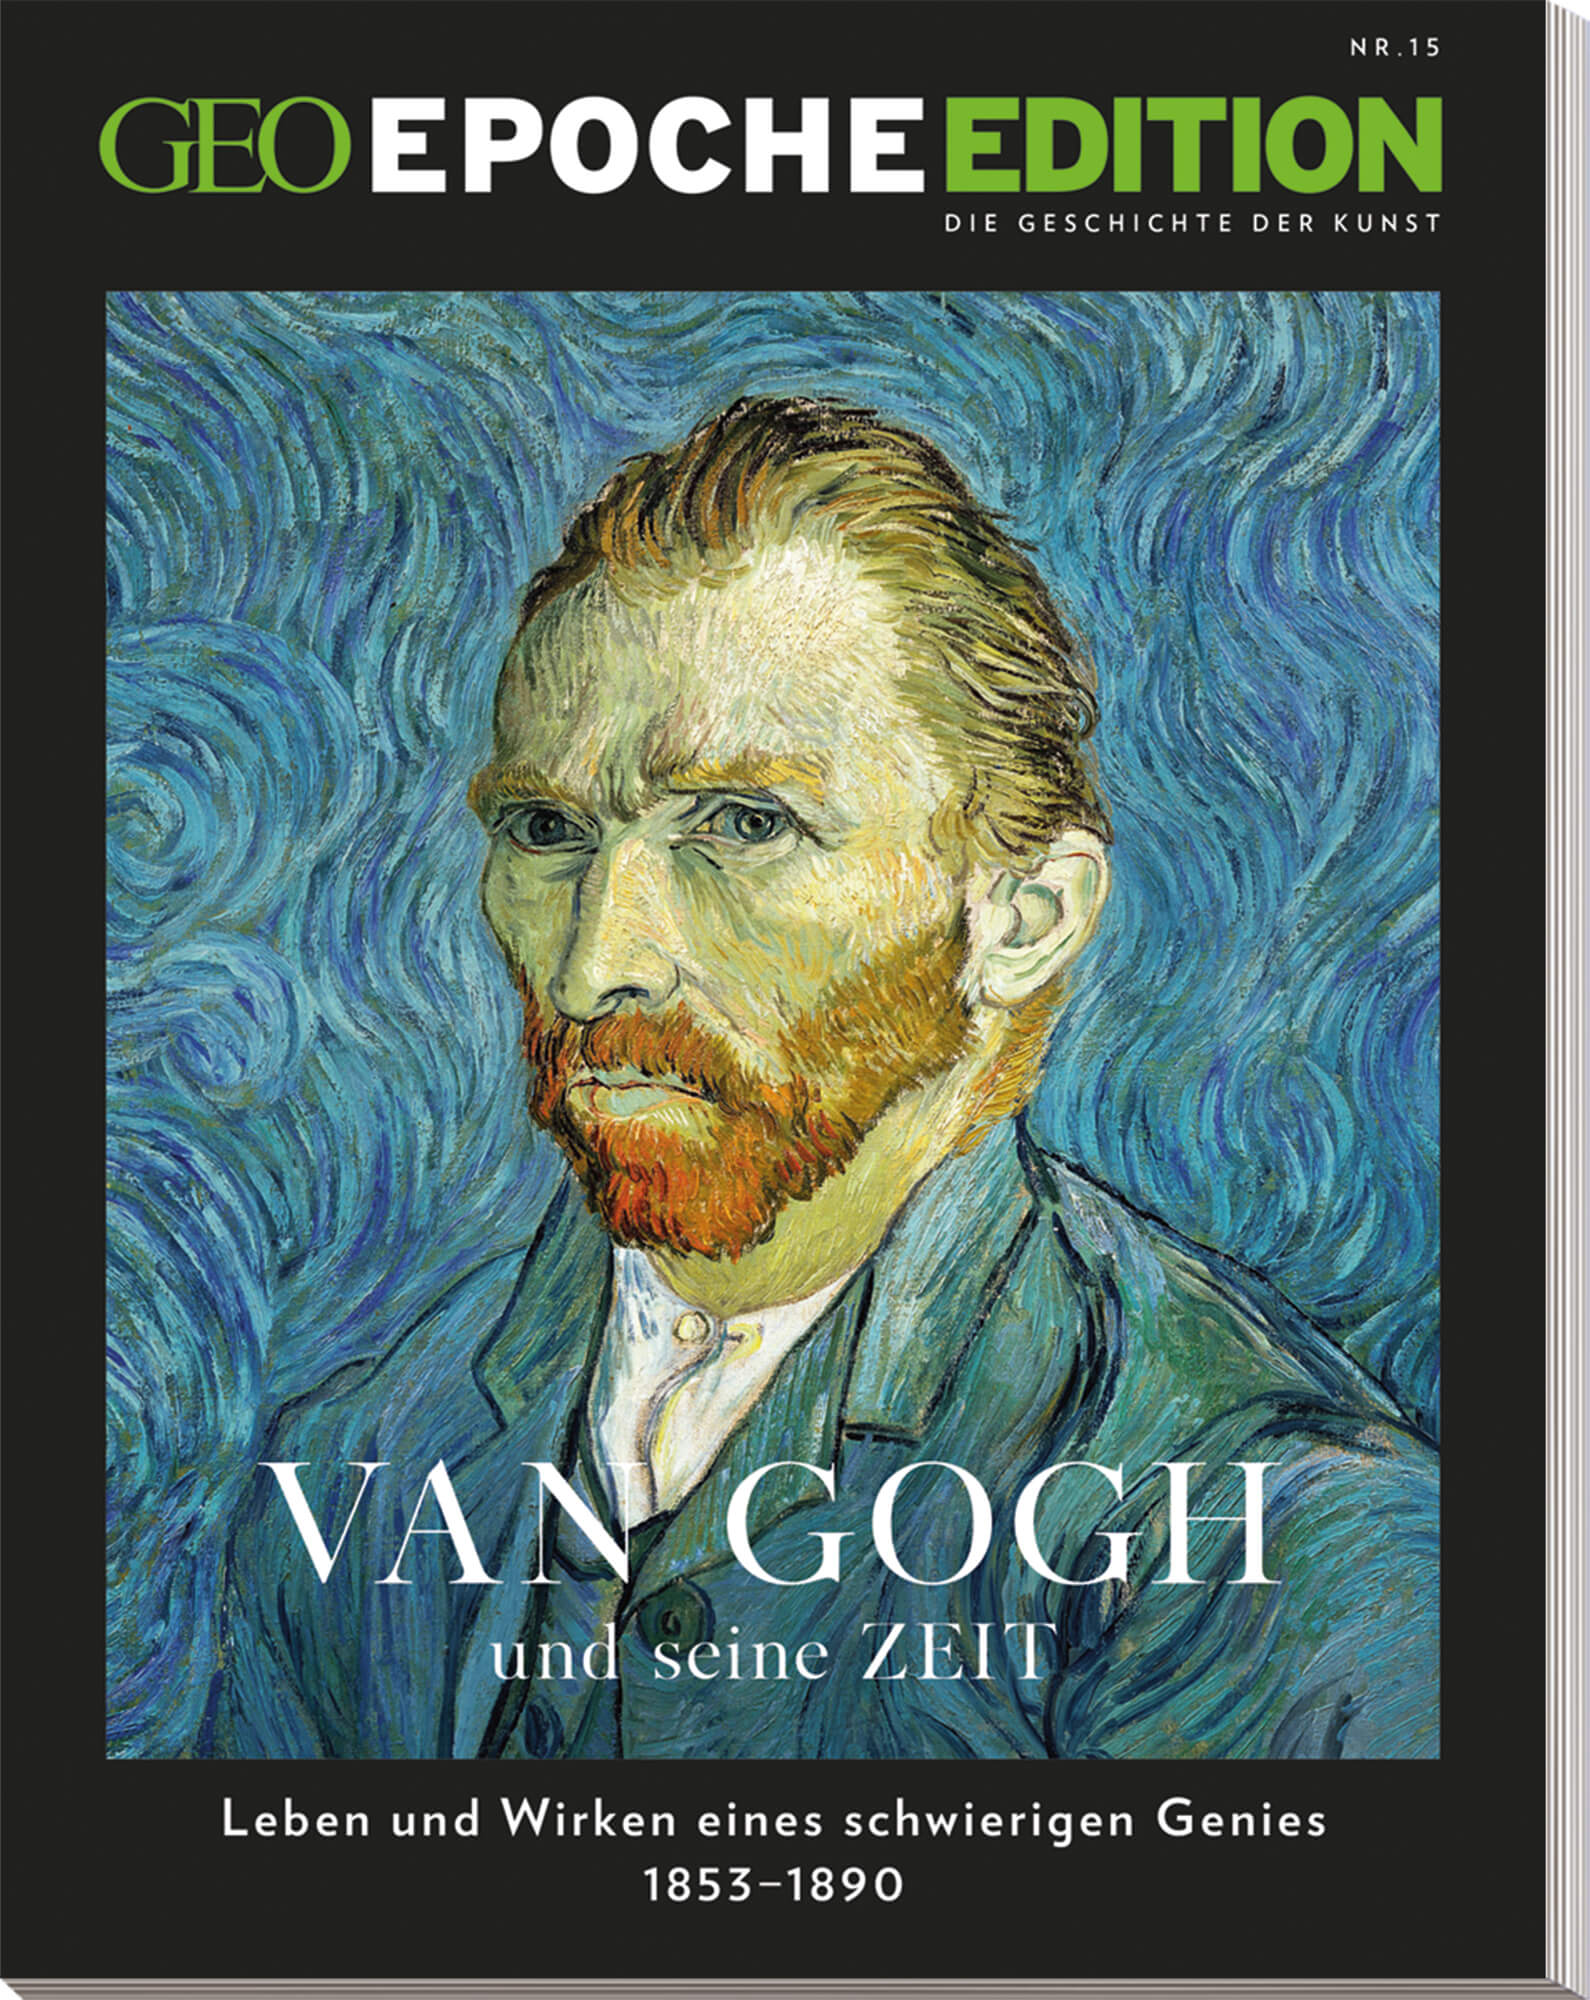 GEO EPOCHE EDITION  „Van Gogh und seine Zeit“